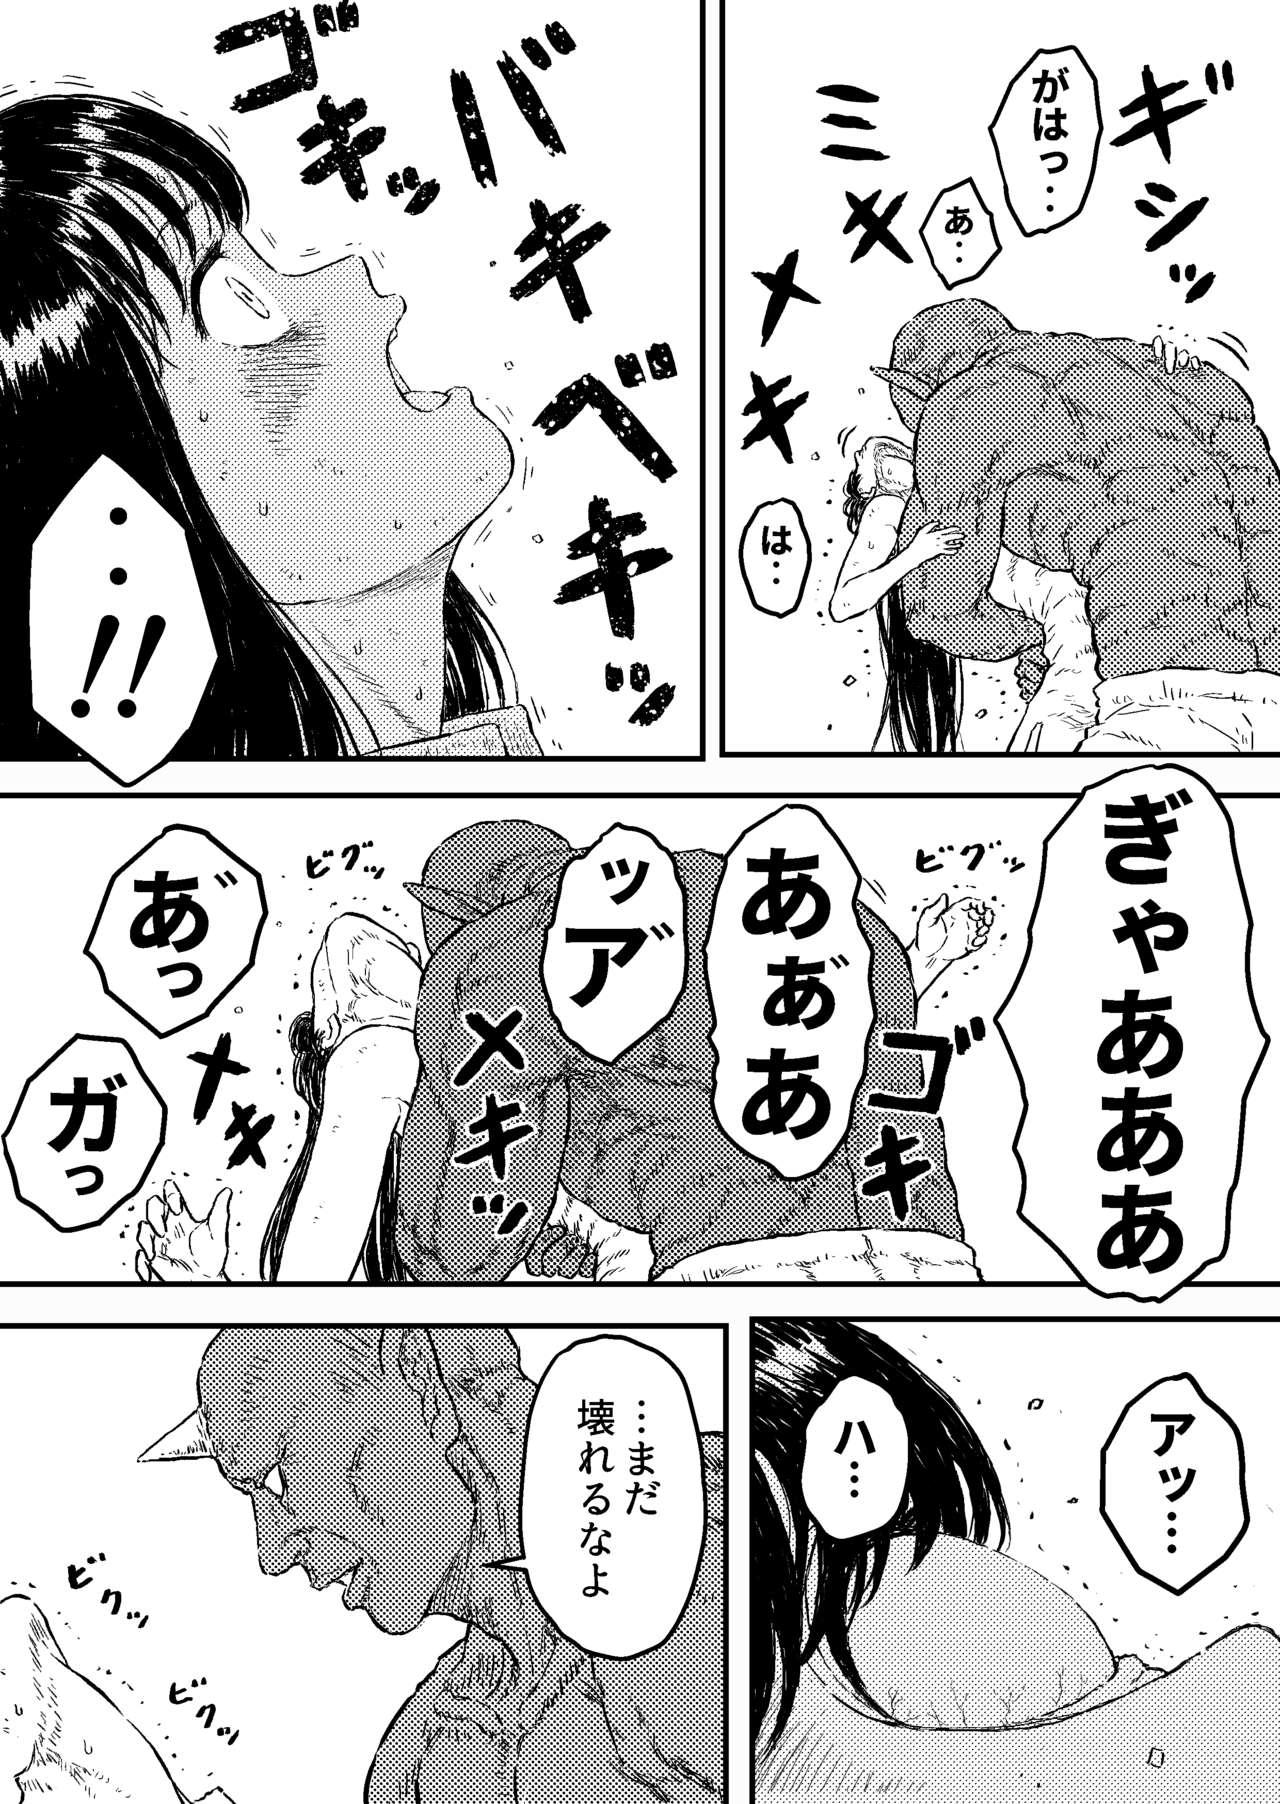 Ass Licking Sutoranguru Gold 4 『Seigi no hiroin kosatsu subete o kake te tataka ta shojo no unmei』 - Original Mojada - Page 7